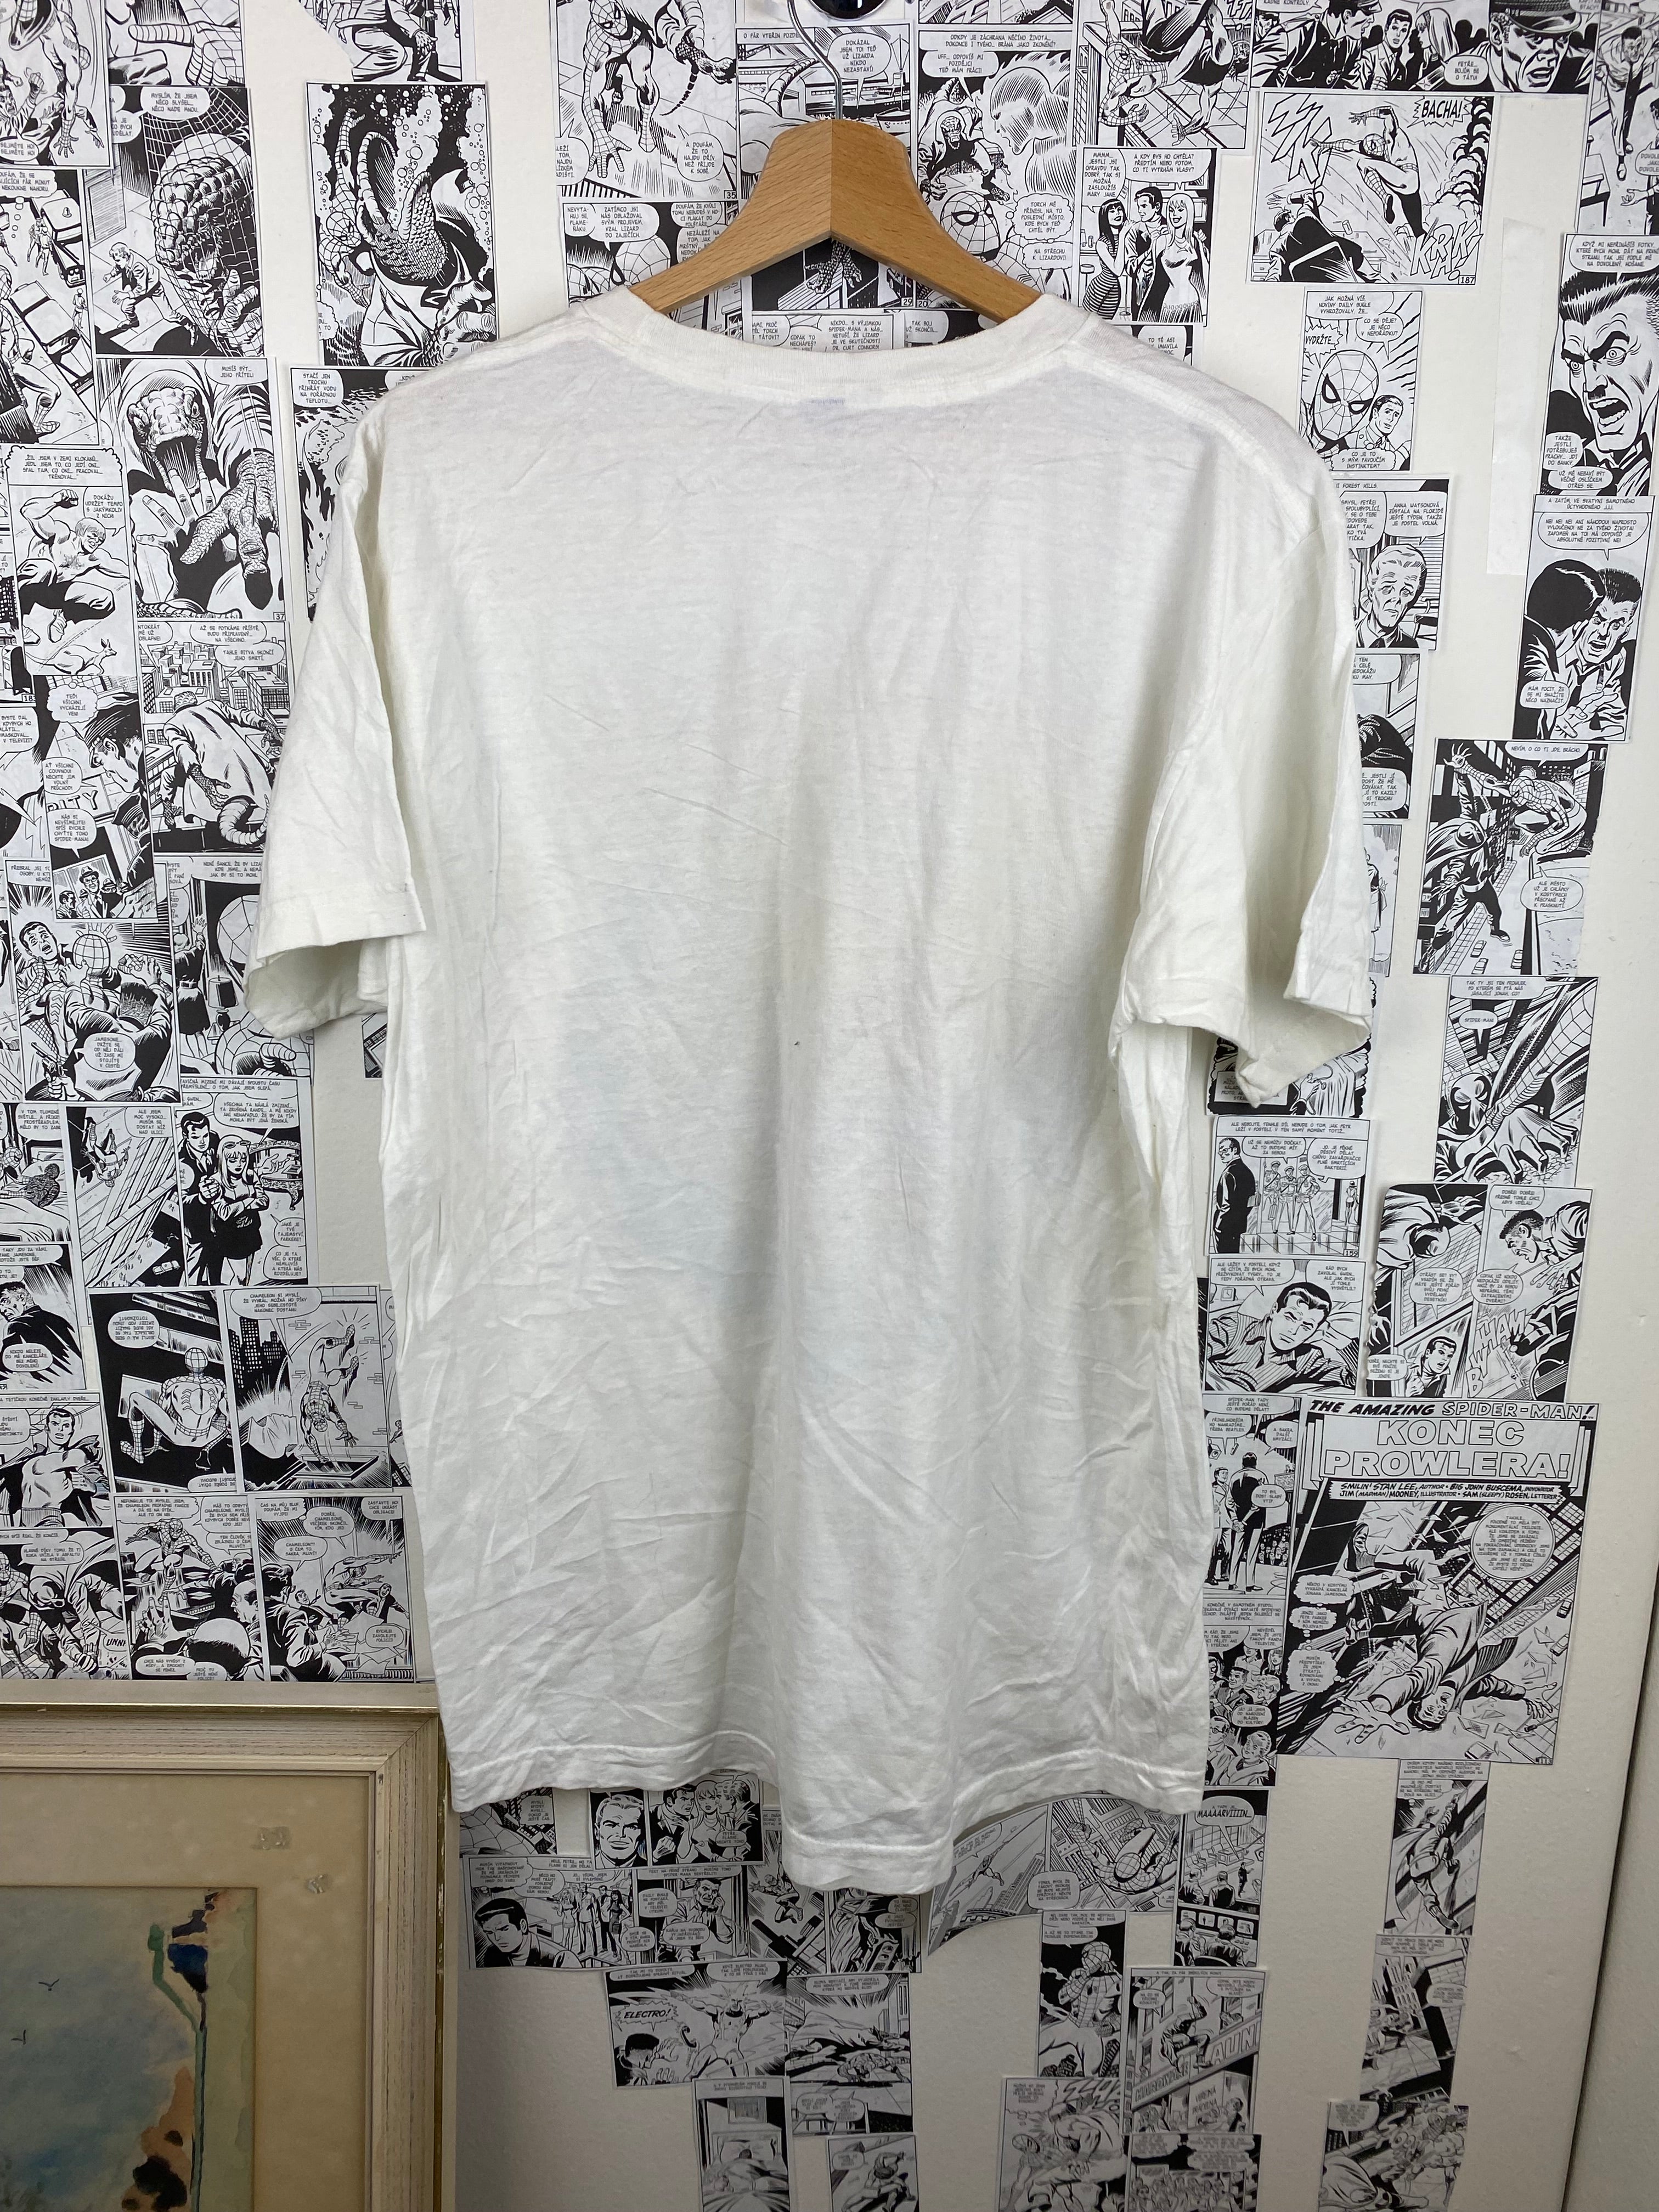 Vintage Aerosmith 2015 t-shirt- size L